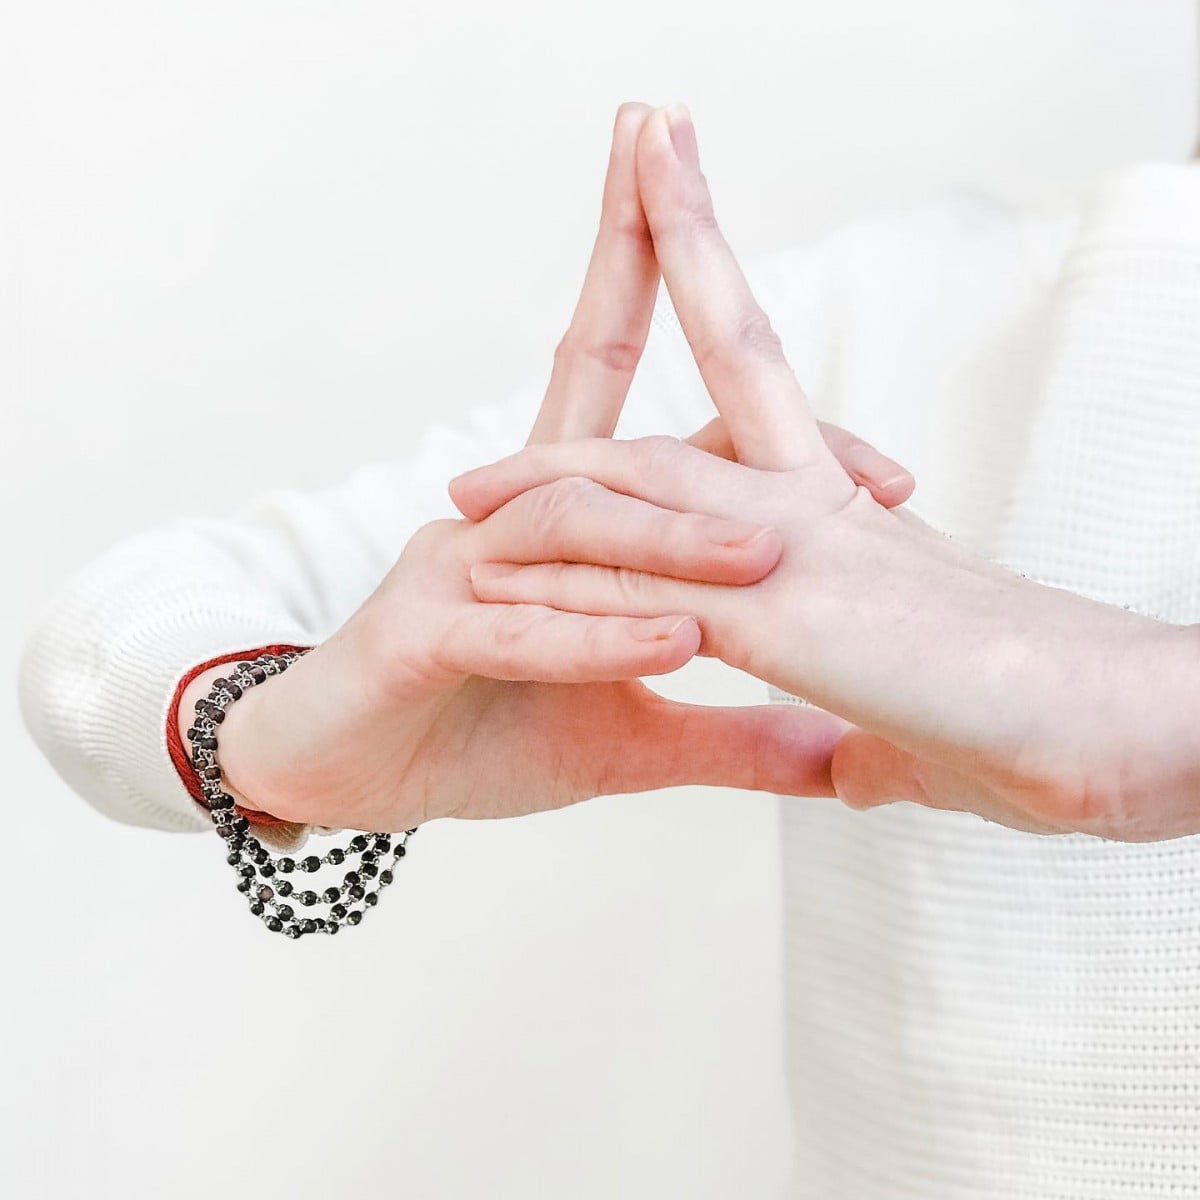 Les bienfaits du Mudra ou Yoga des doigts